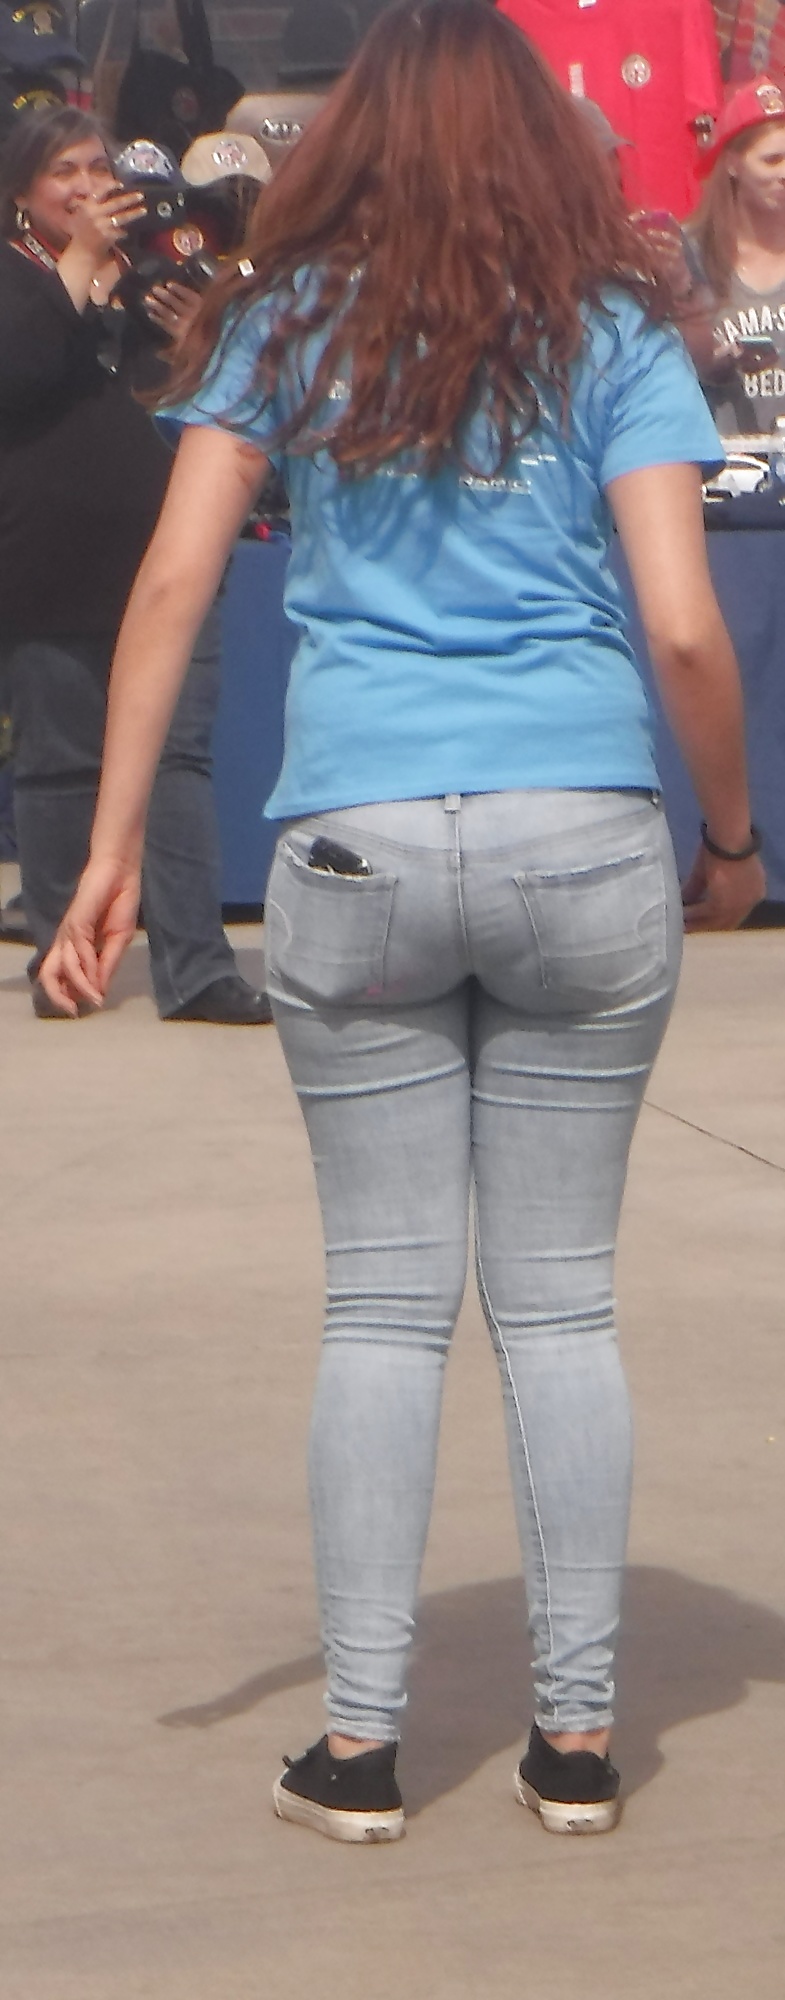 Her_teen_ass_butt_in_jeans (8/23)